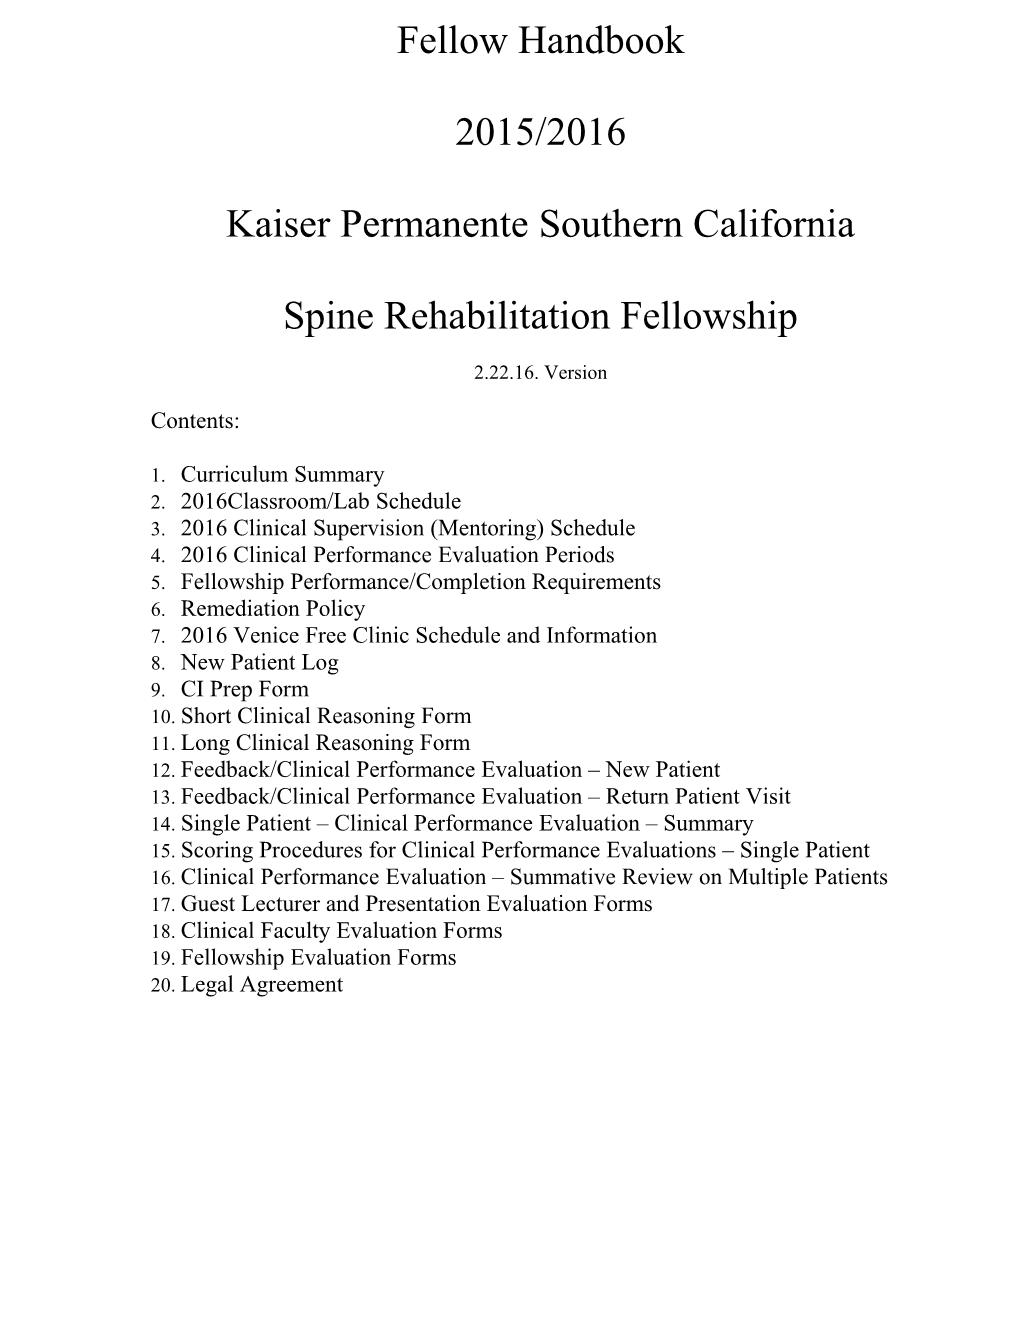 Kaiser Permanente Southern California